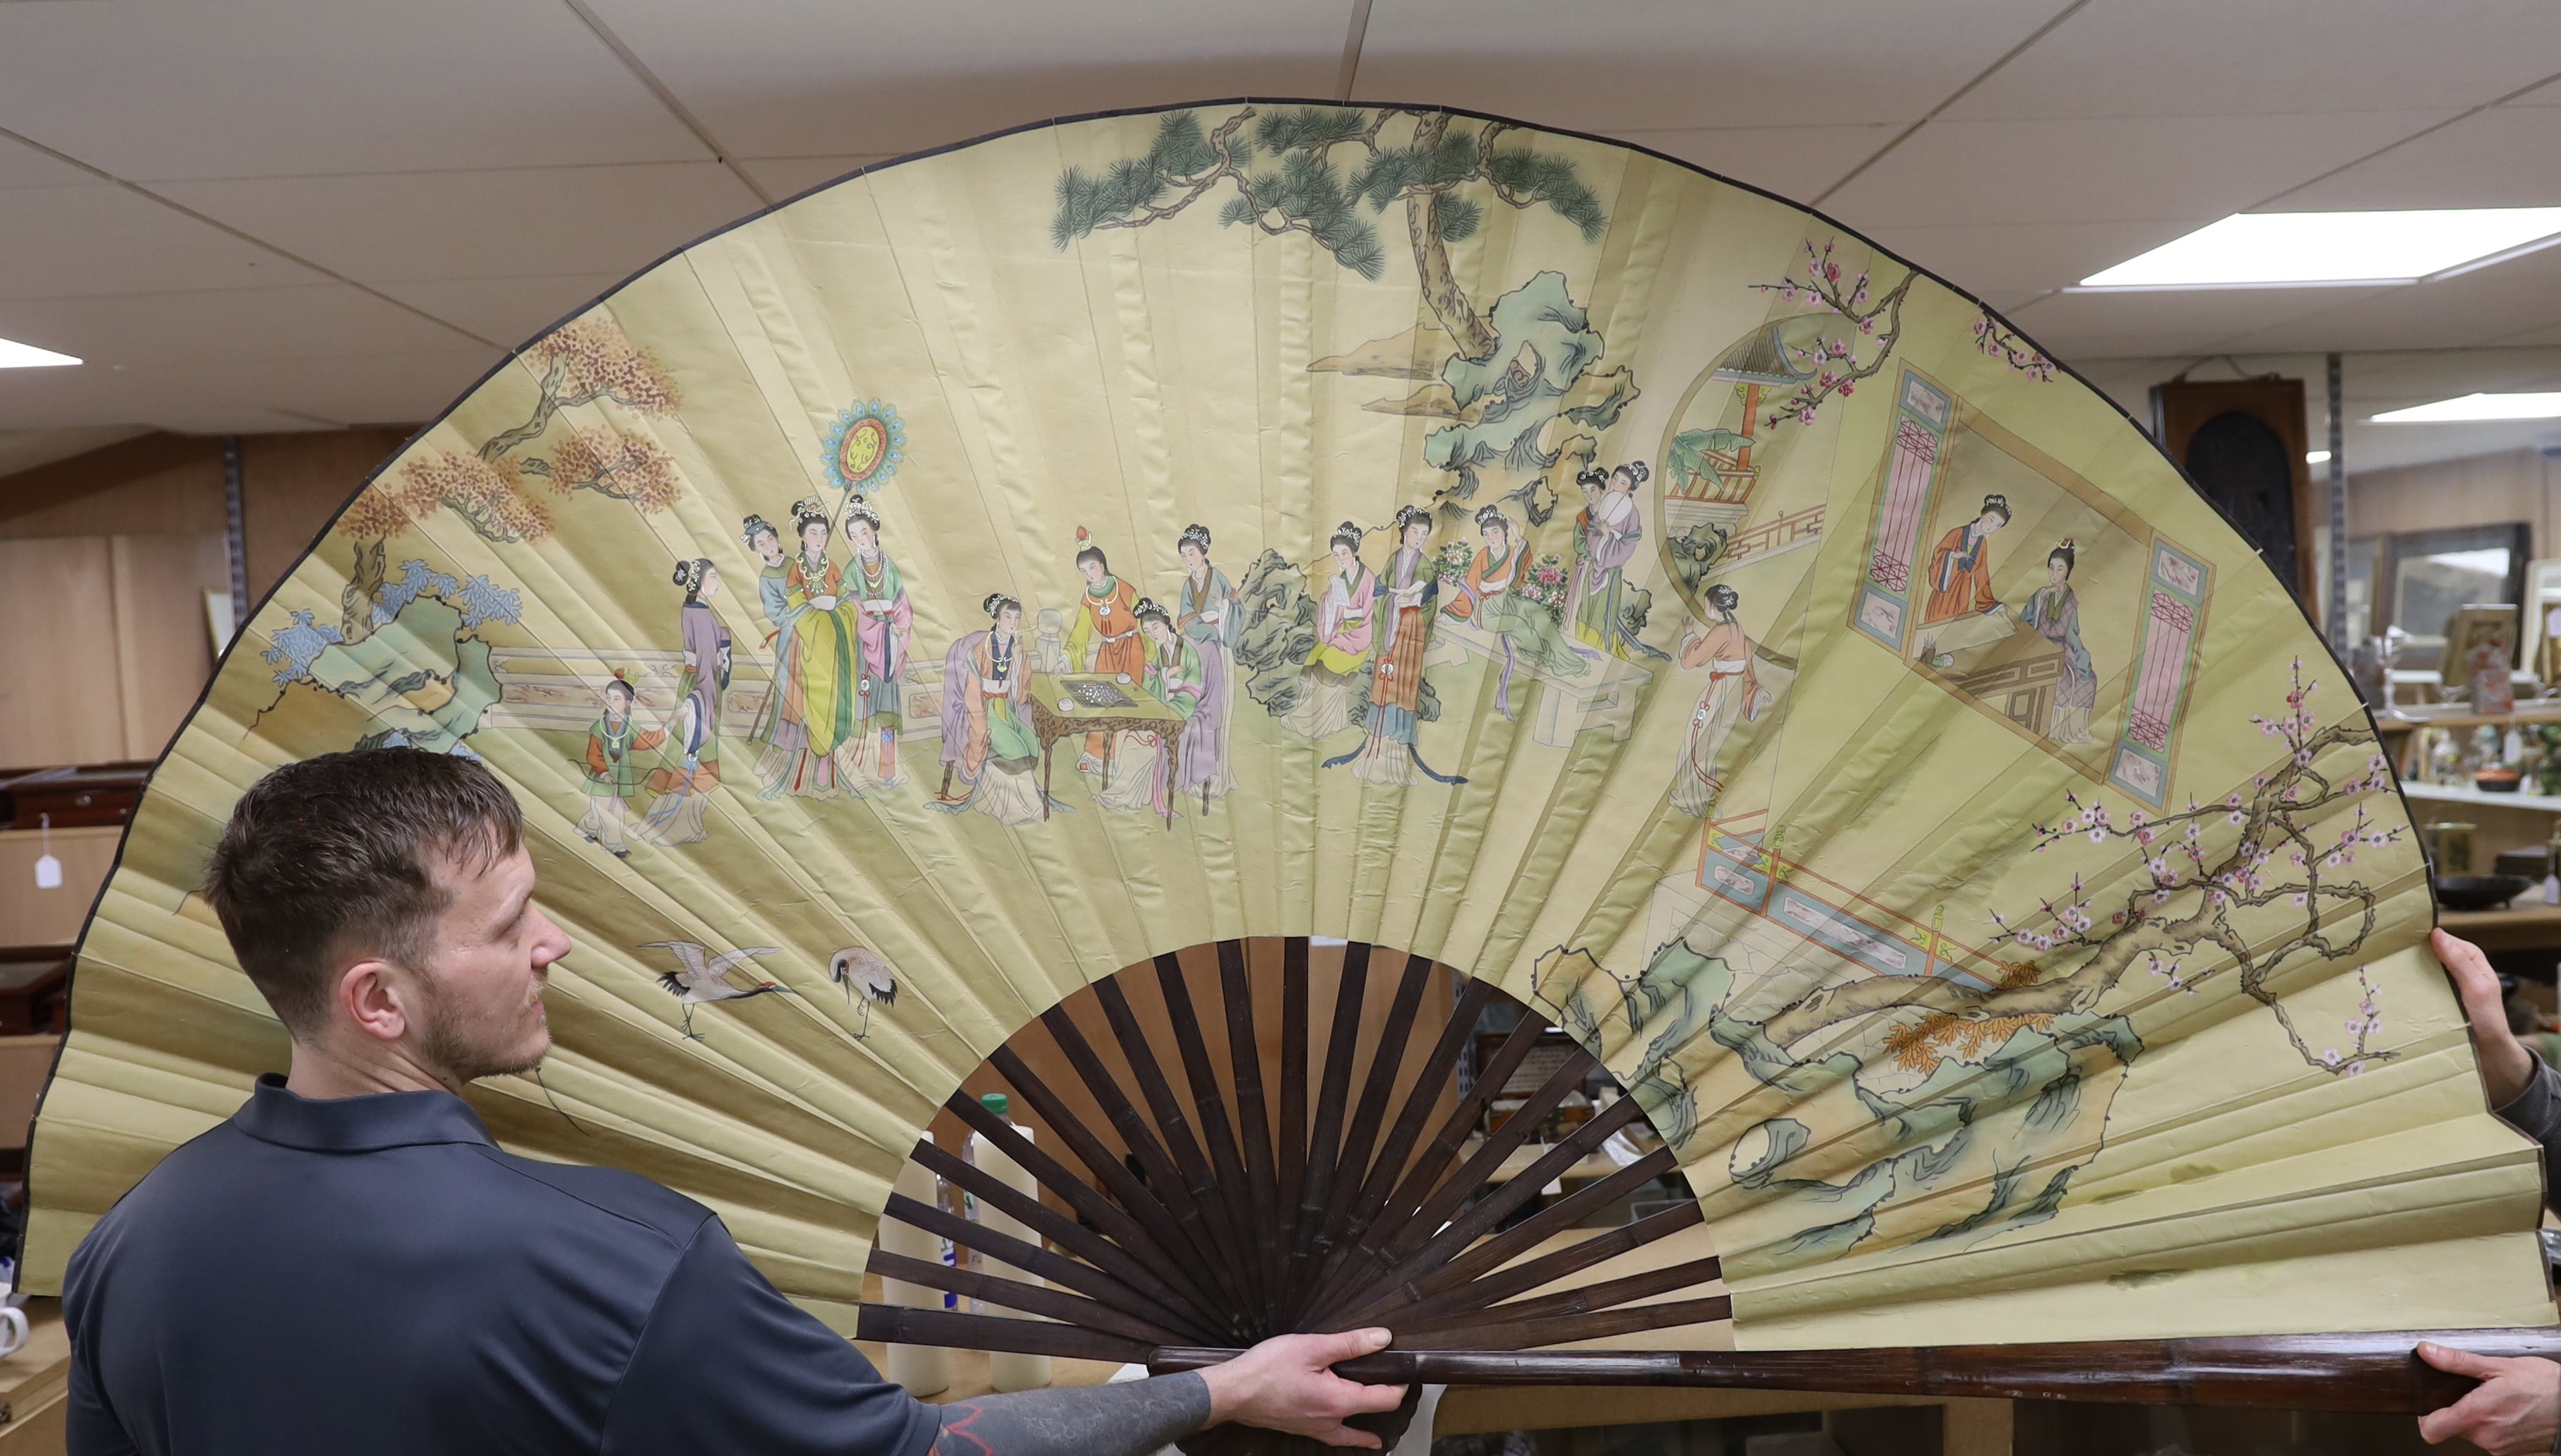 A large unusual Japanese fan